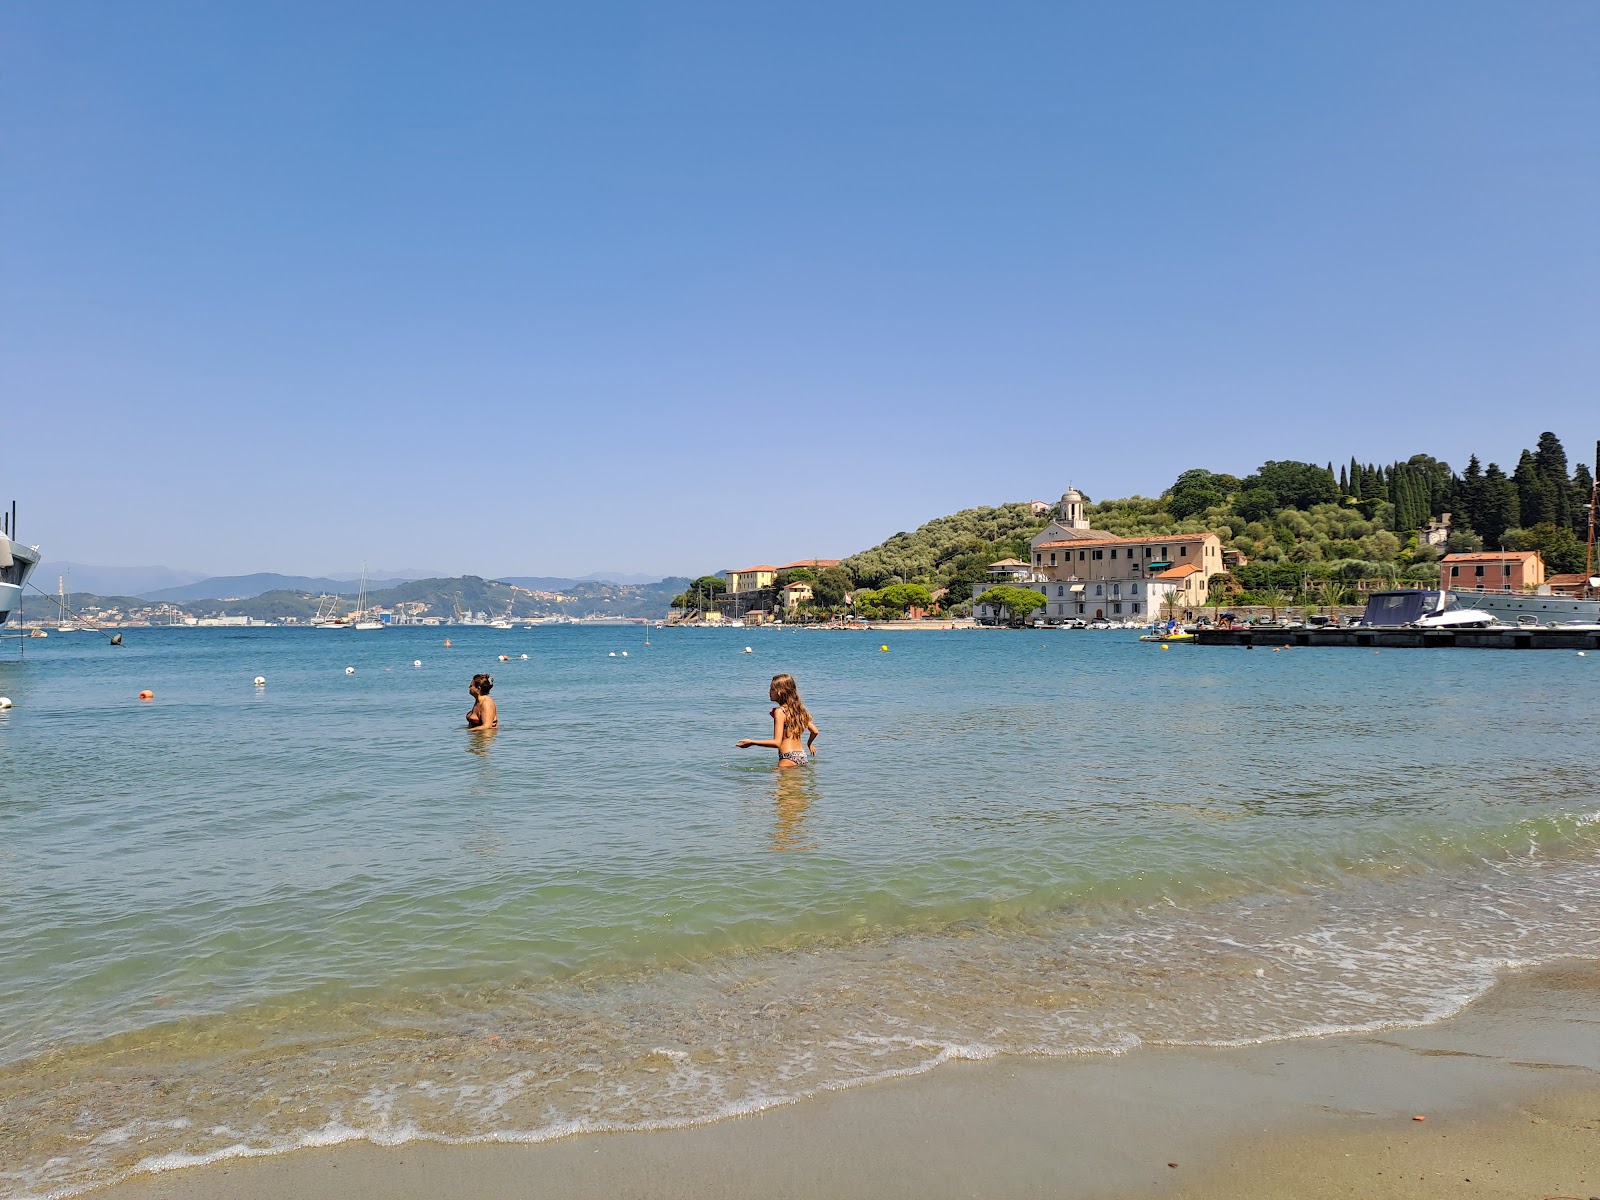 Foto av Spiaggia Giardini Pubblici med ljus sand yta